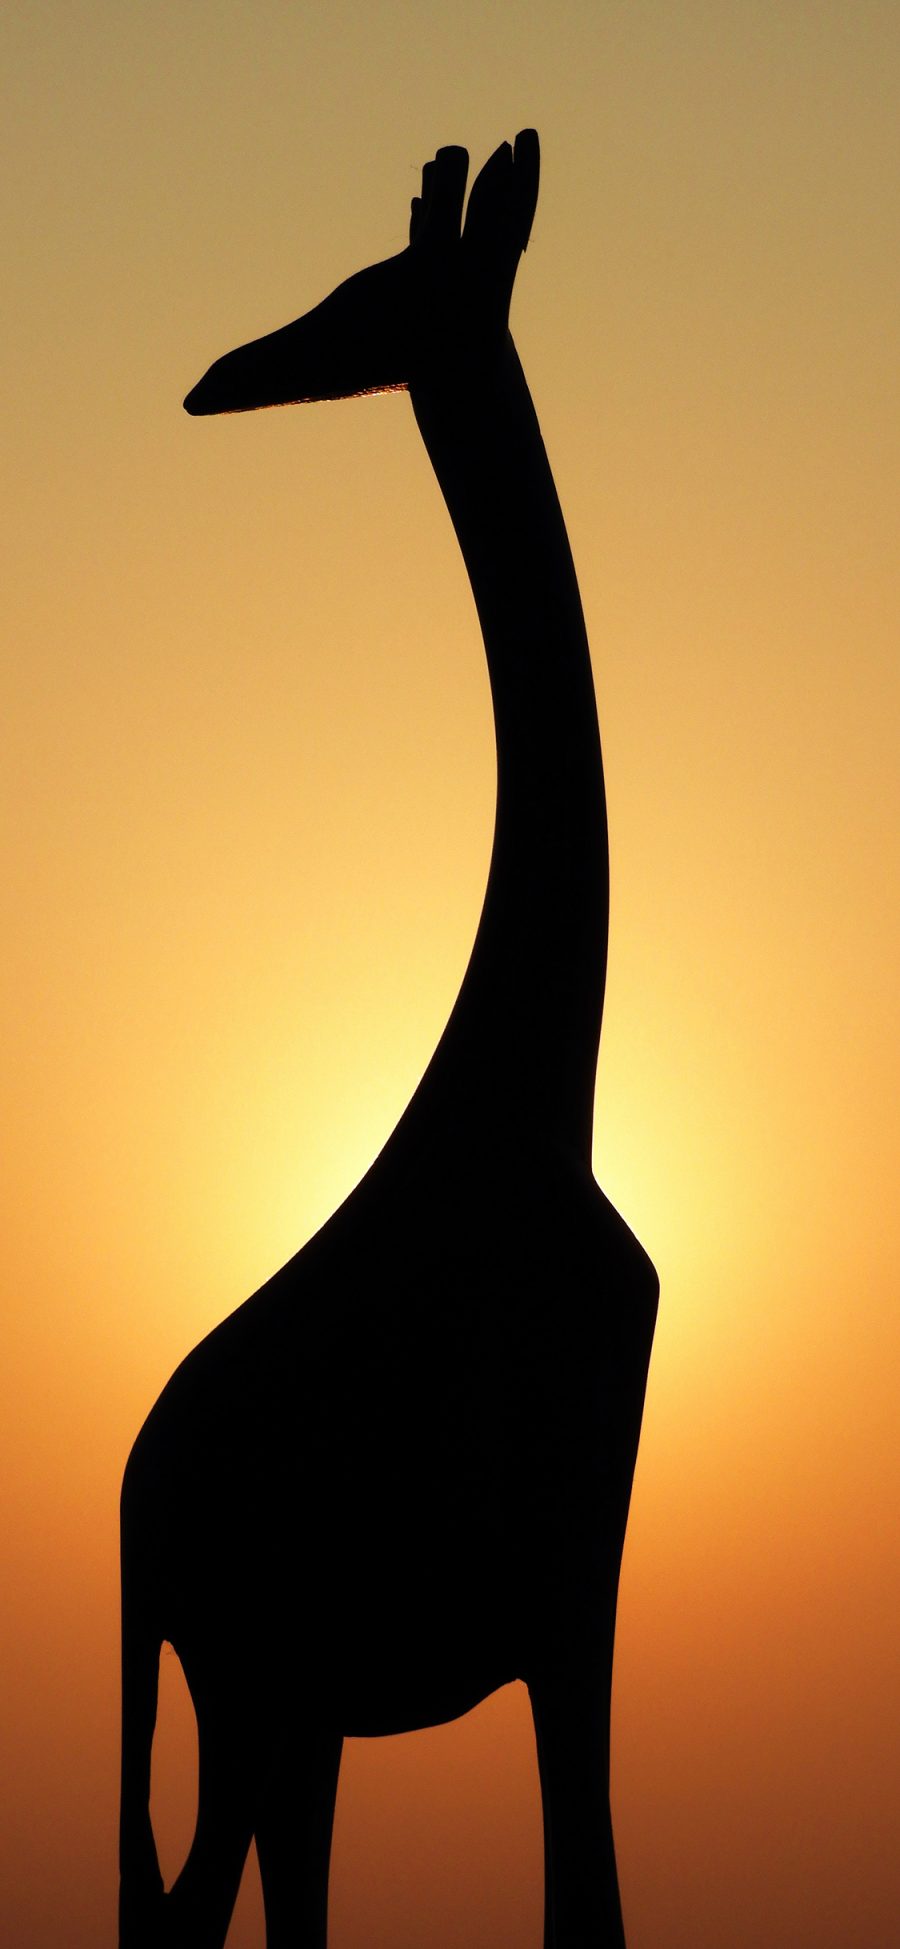 [2436×1125]长颈鹿 剪影 阴影 夕阳 苹果手机壁纸图片